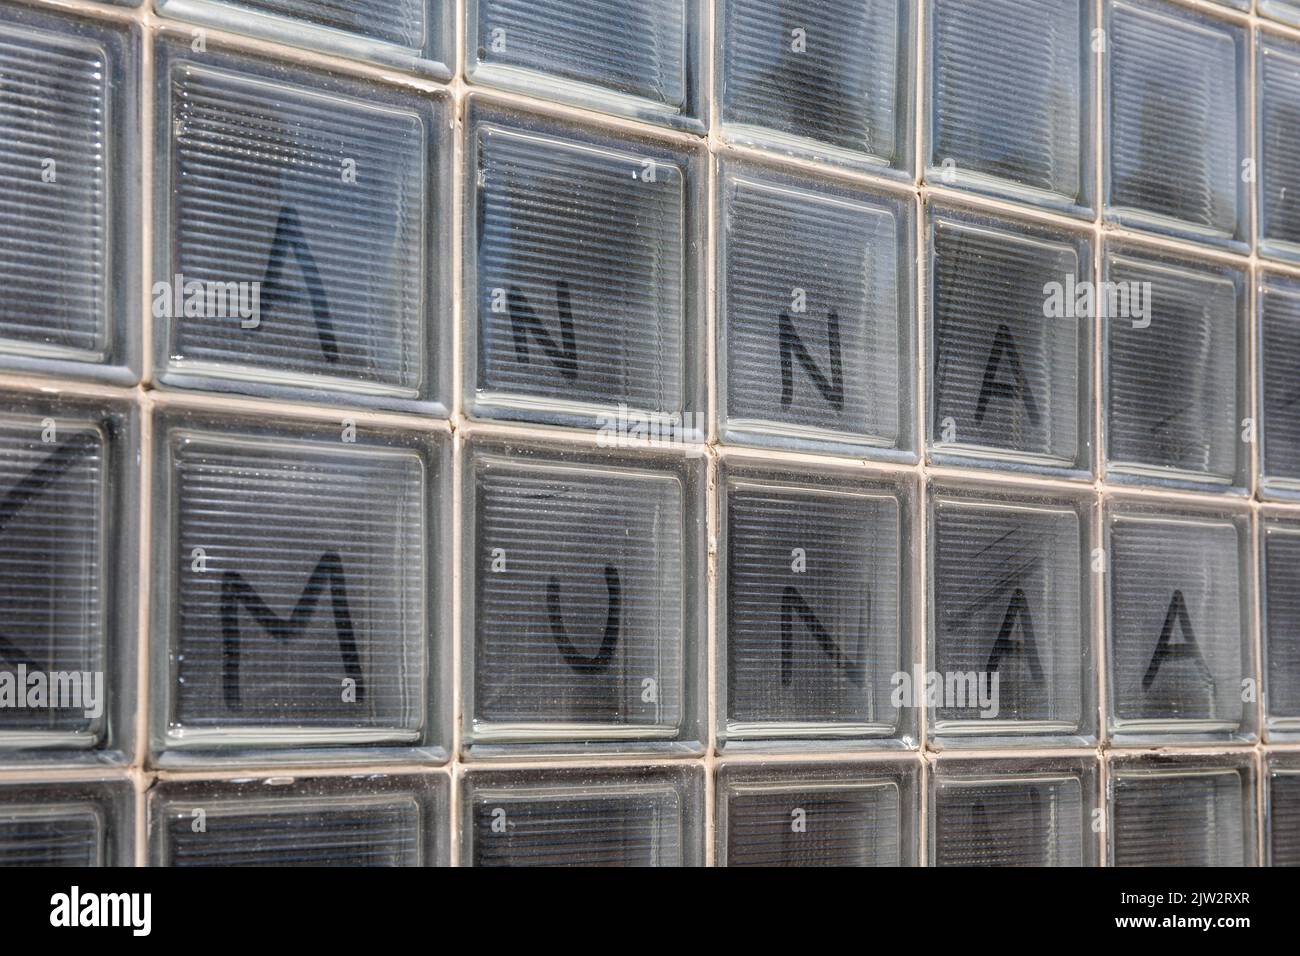 Anna munaa. Testo scritto su vetrata polverosa o sporca a Helsinki, Finlandia. Foto Stock